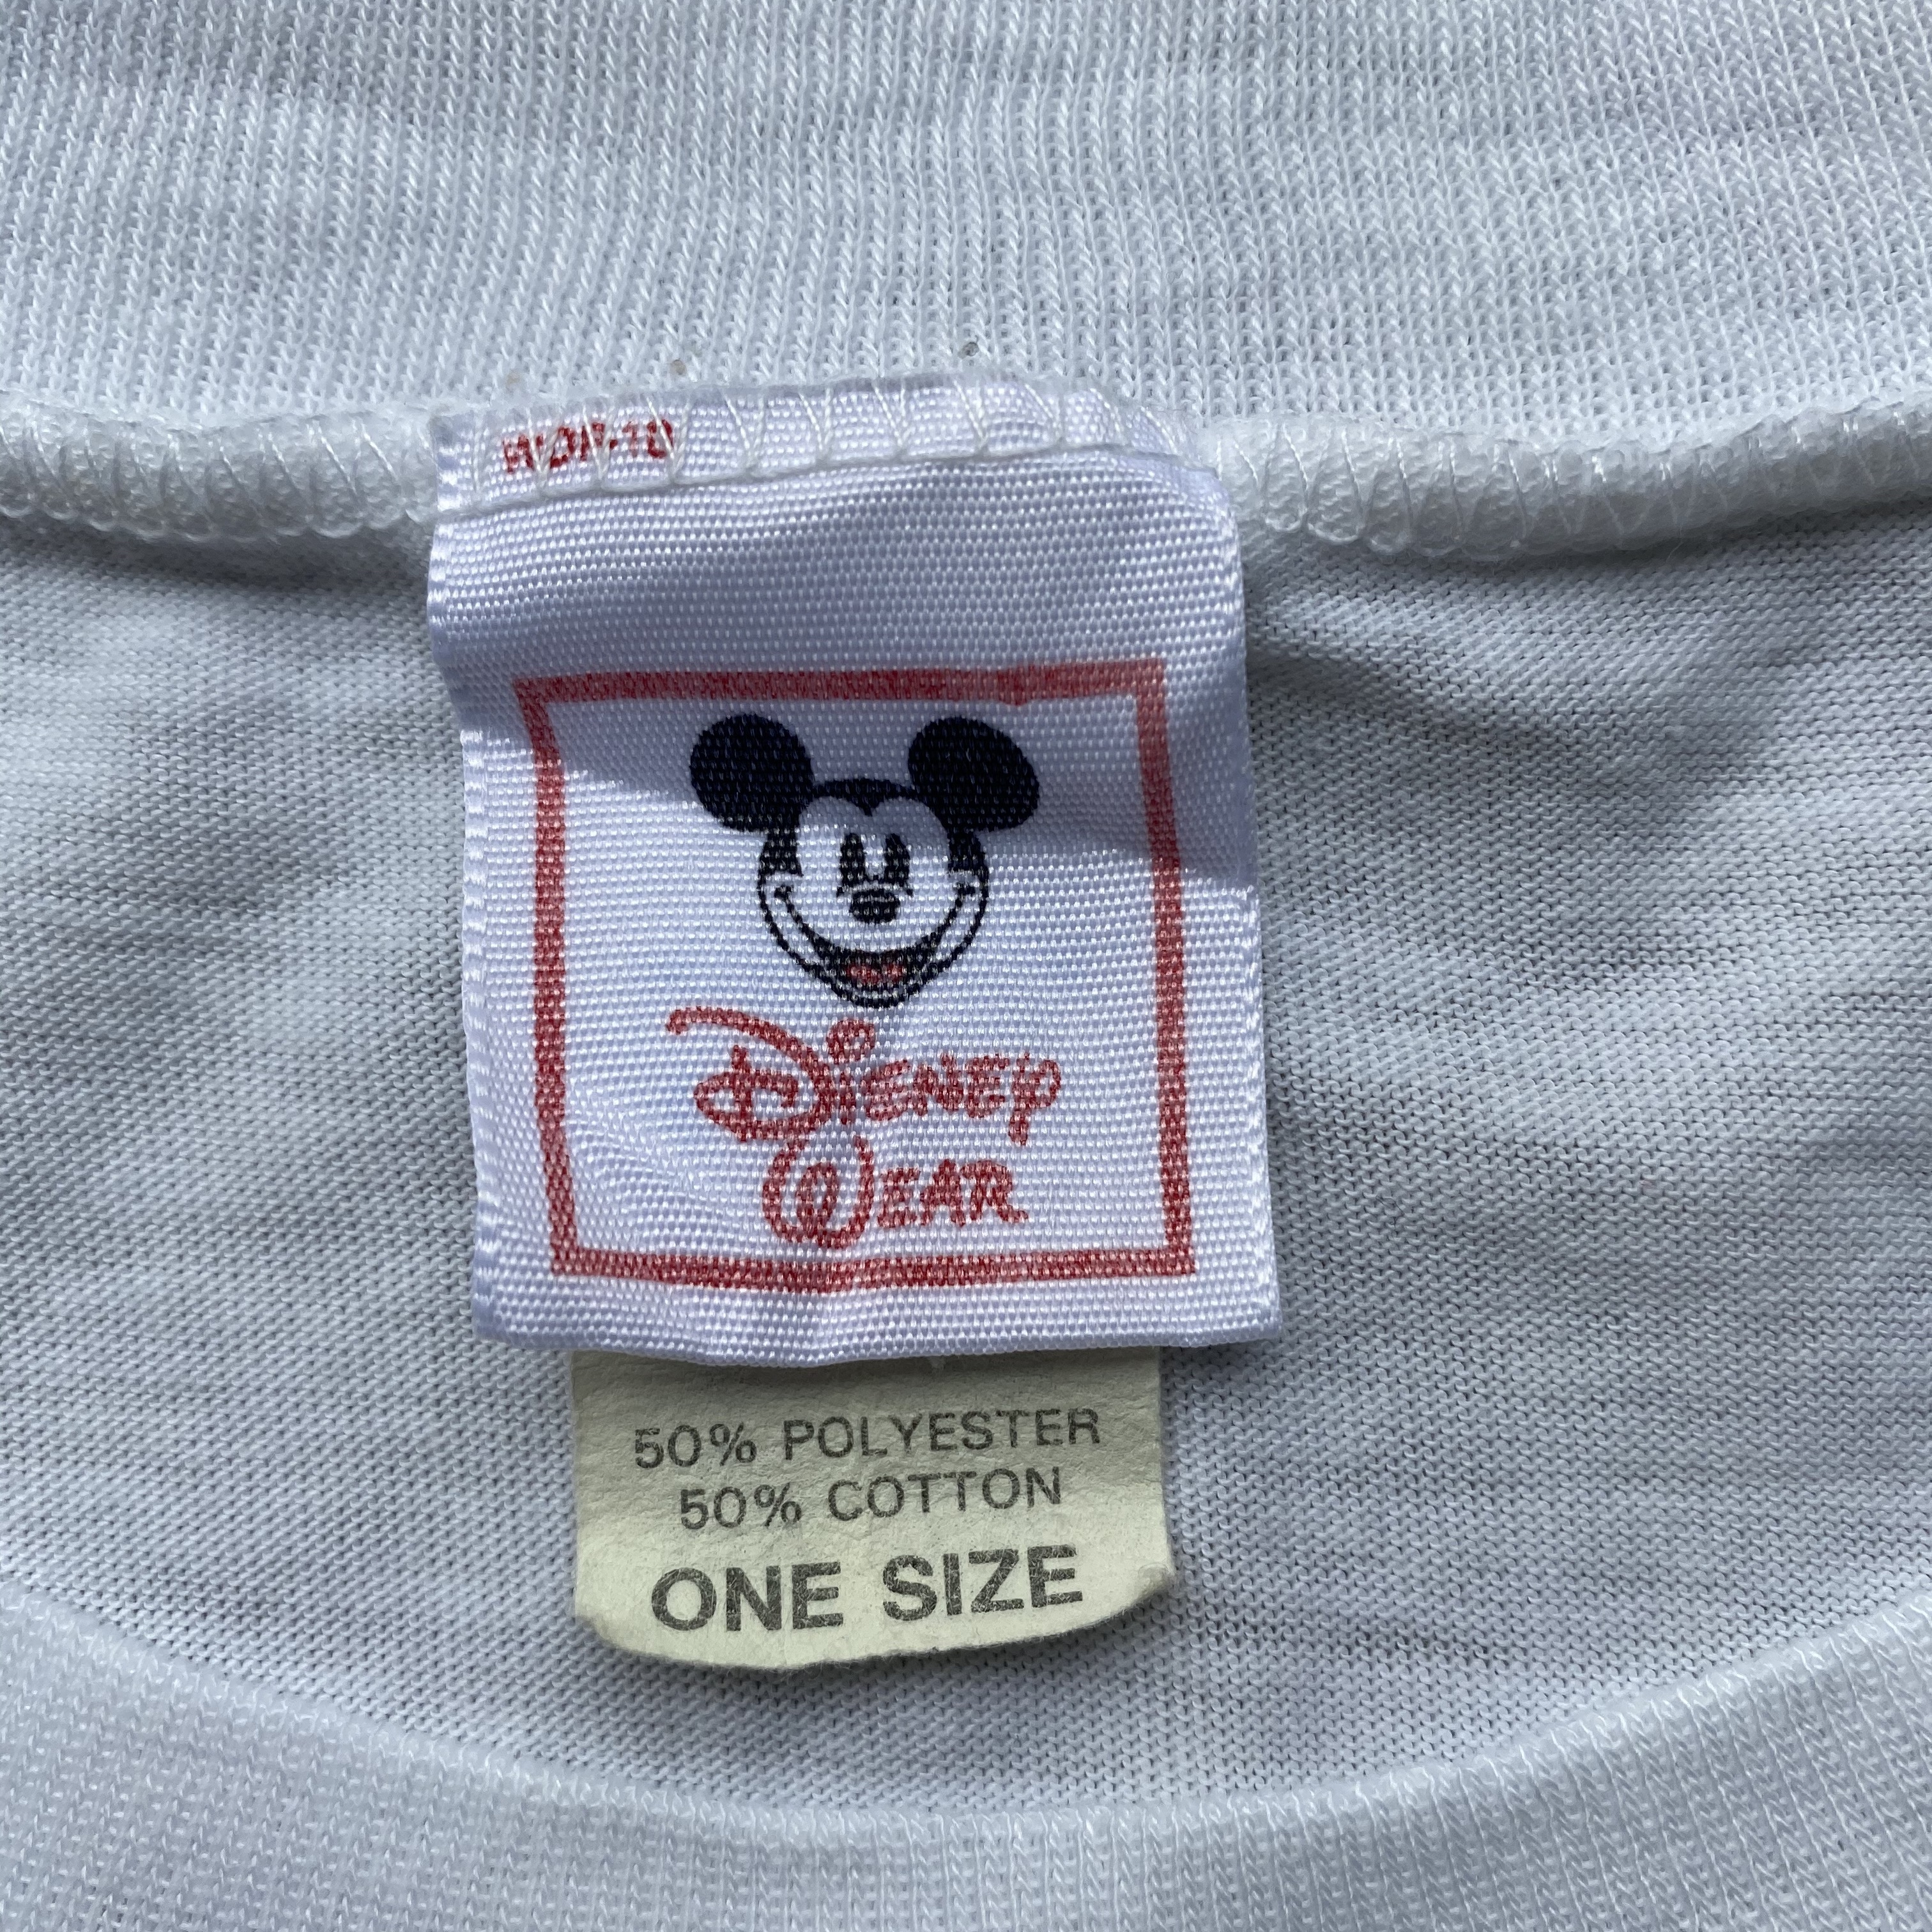 ビッグサイズ 80年代 Disney Wear ディズニー Mickey Mouse ミッキーマウス プリントtシャツ キャラクターtシャツ ワンピース メンズ レディース ワンサイズ 古着 Tシャツ Al Sa Cave 古着屋 公式 古着通販サイト 夏物最大50 Off開催中